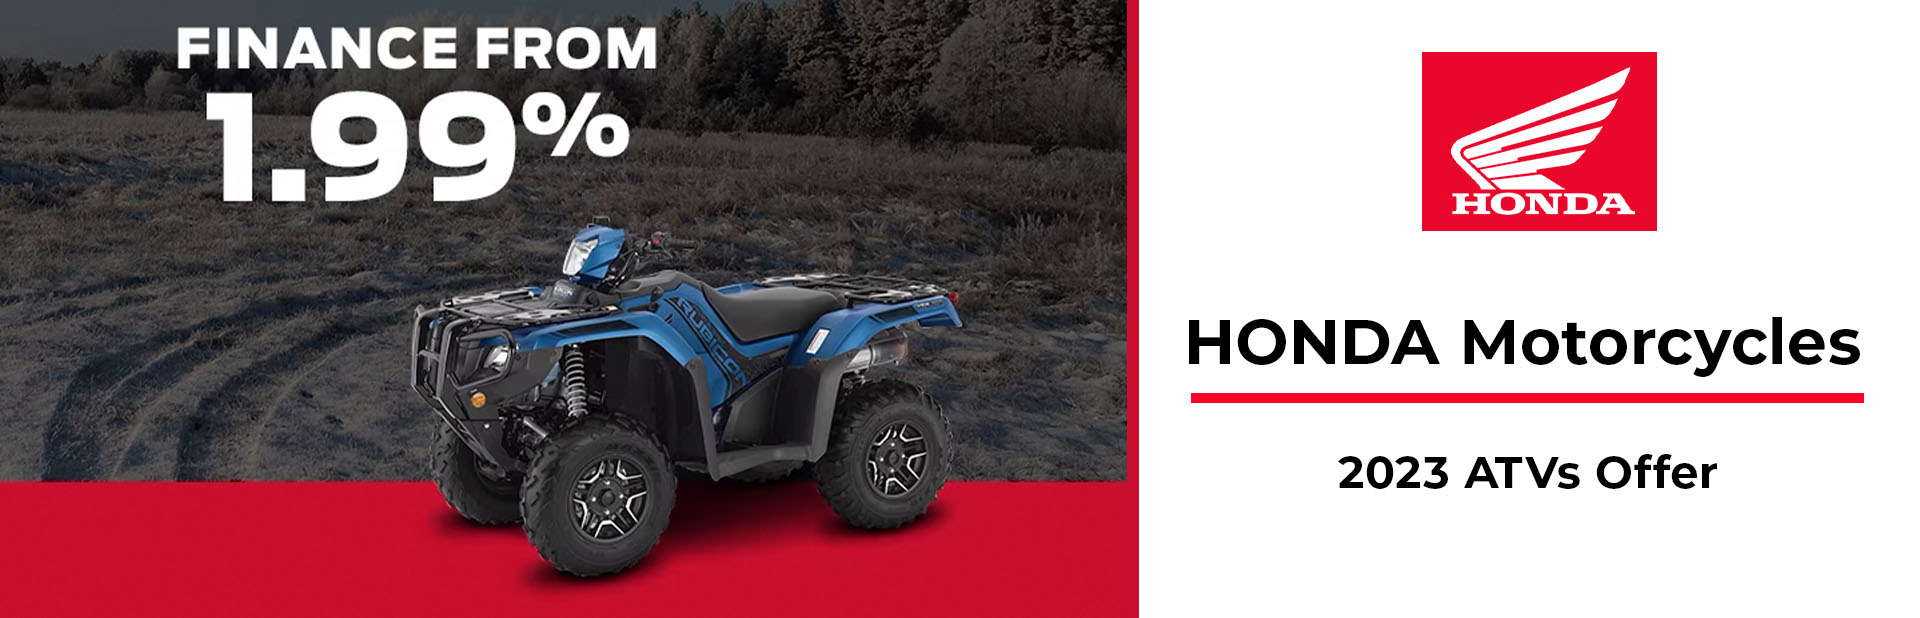 Honda: 2023 ATVs Offer